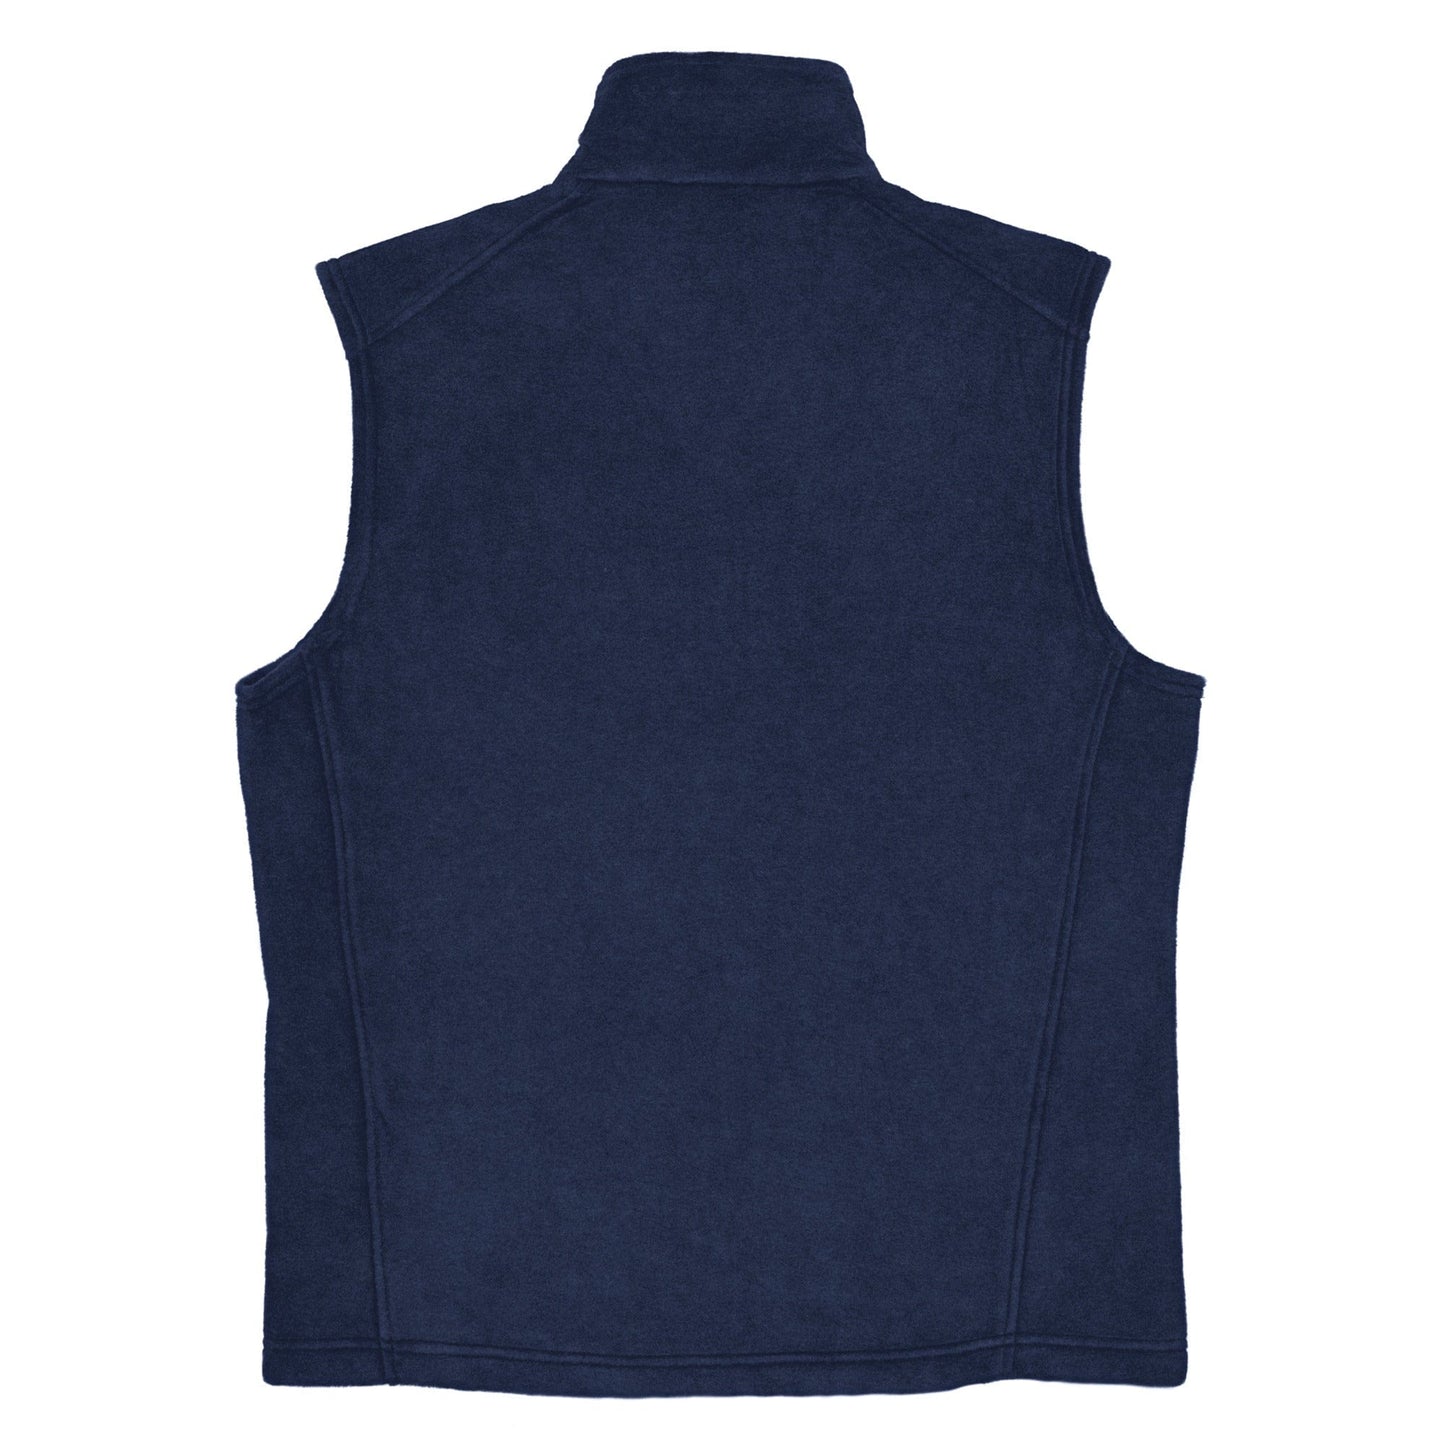 Men’s fleece vest